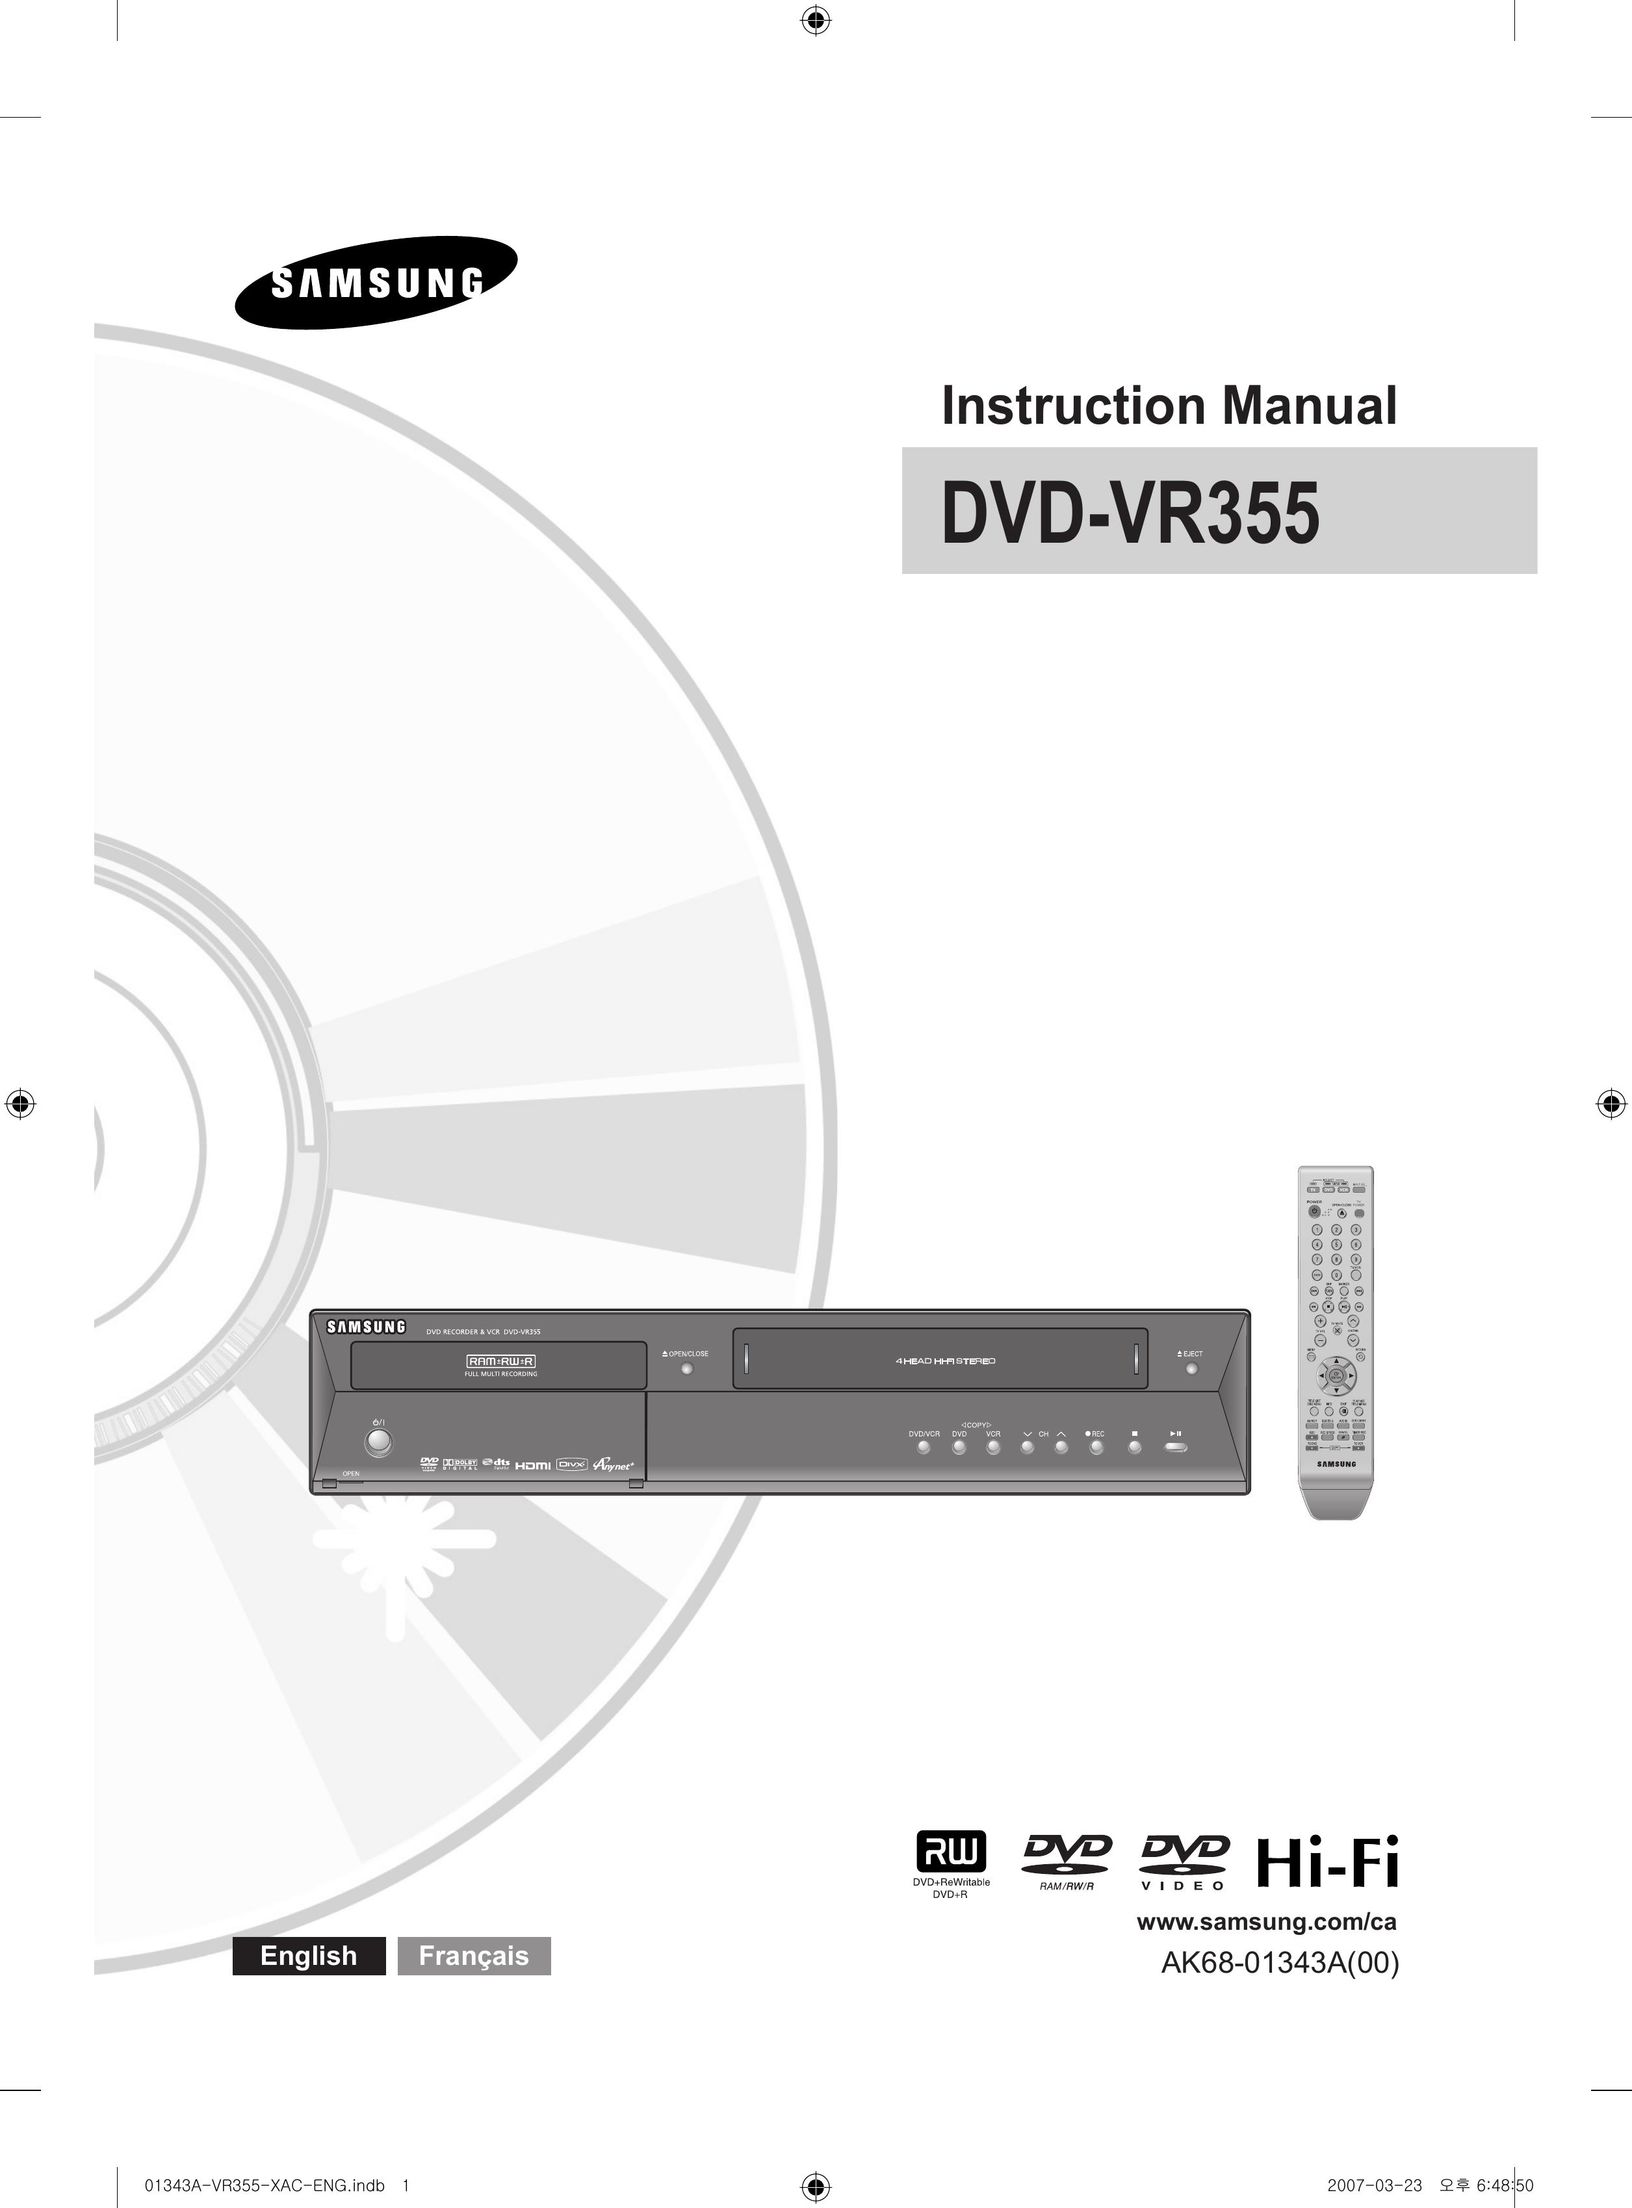 Samsung DVD-VR355 DVR User Manual